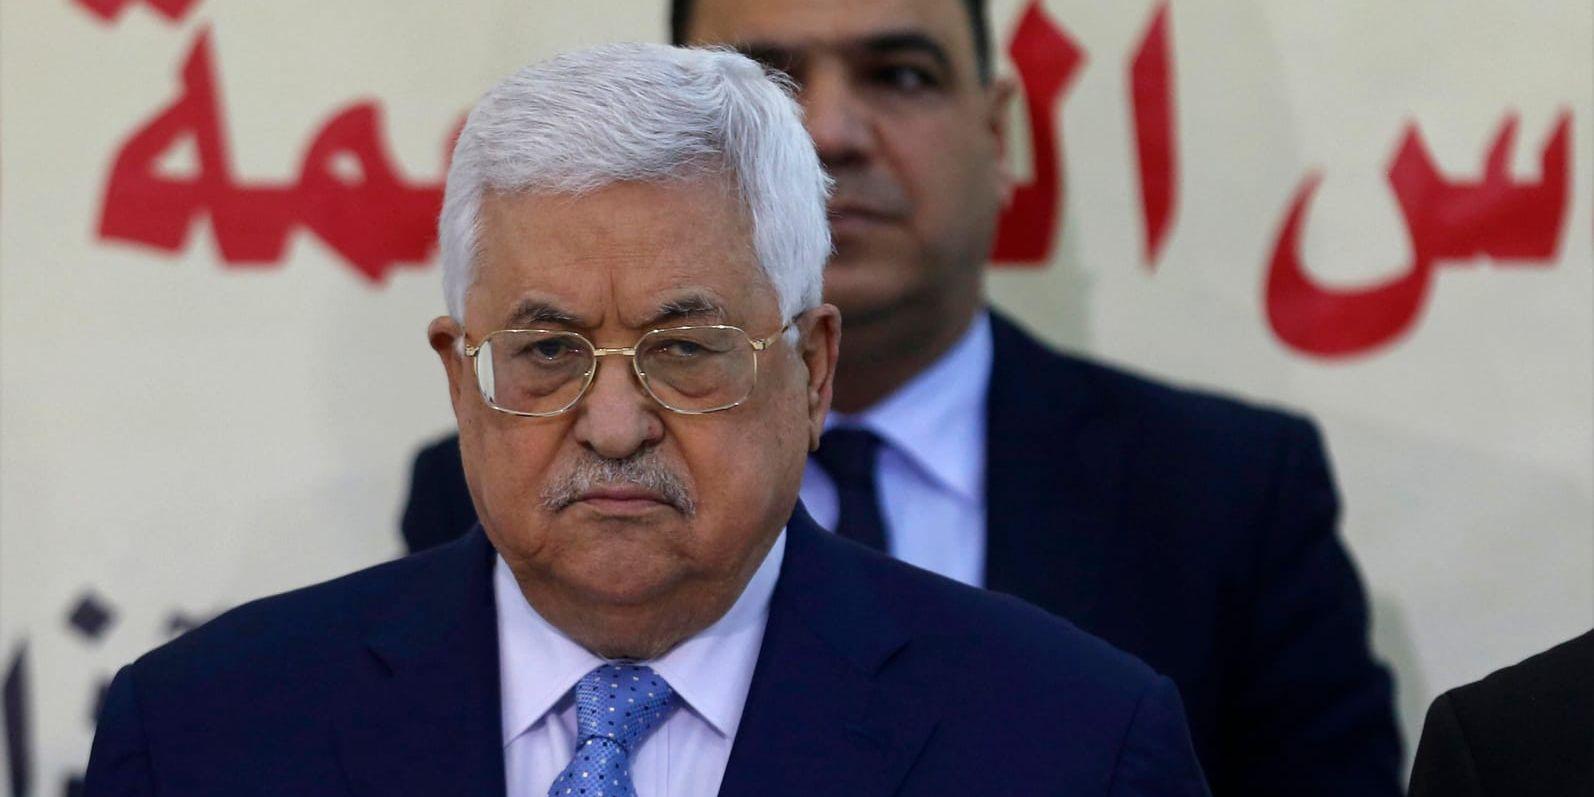 Palestiniernas ledare Mahmud Abbas kritiseras efter kommentarer om Förintelsen. Arkivbild.